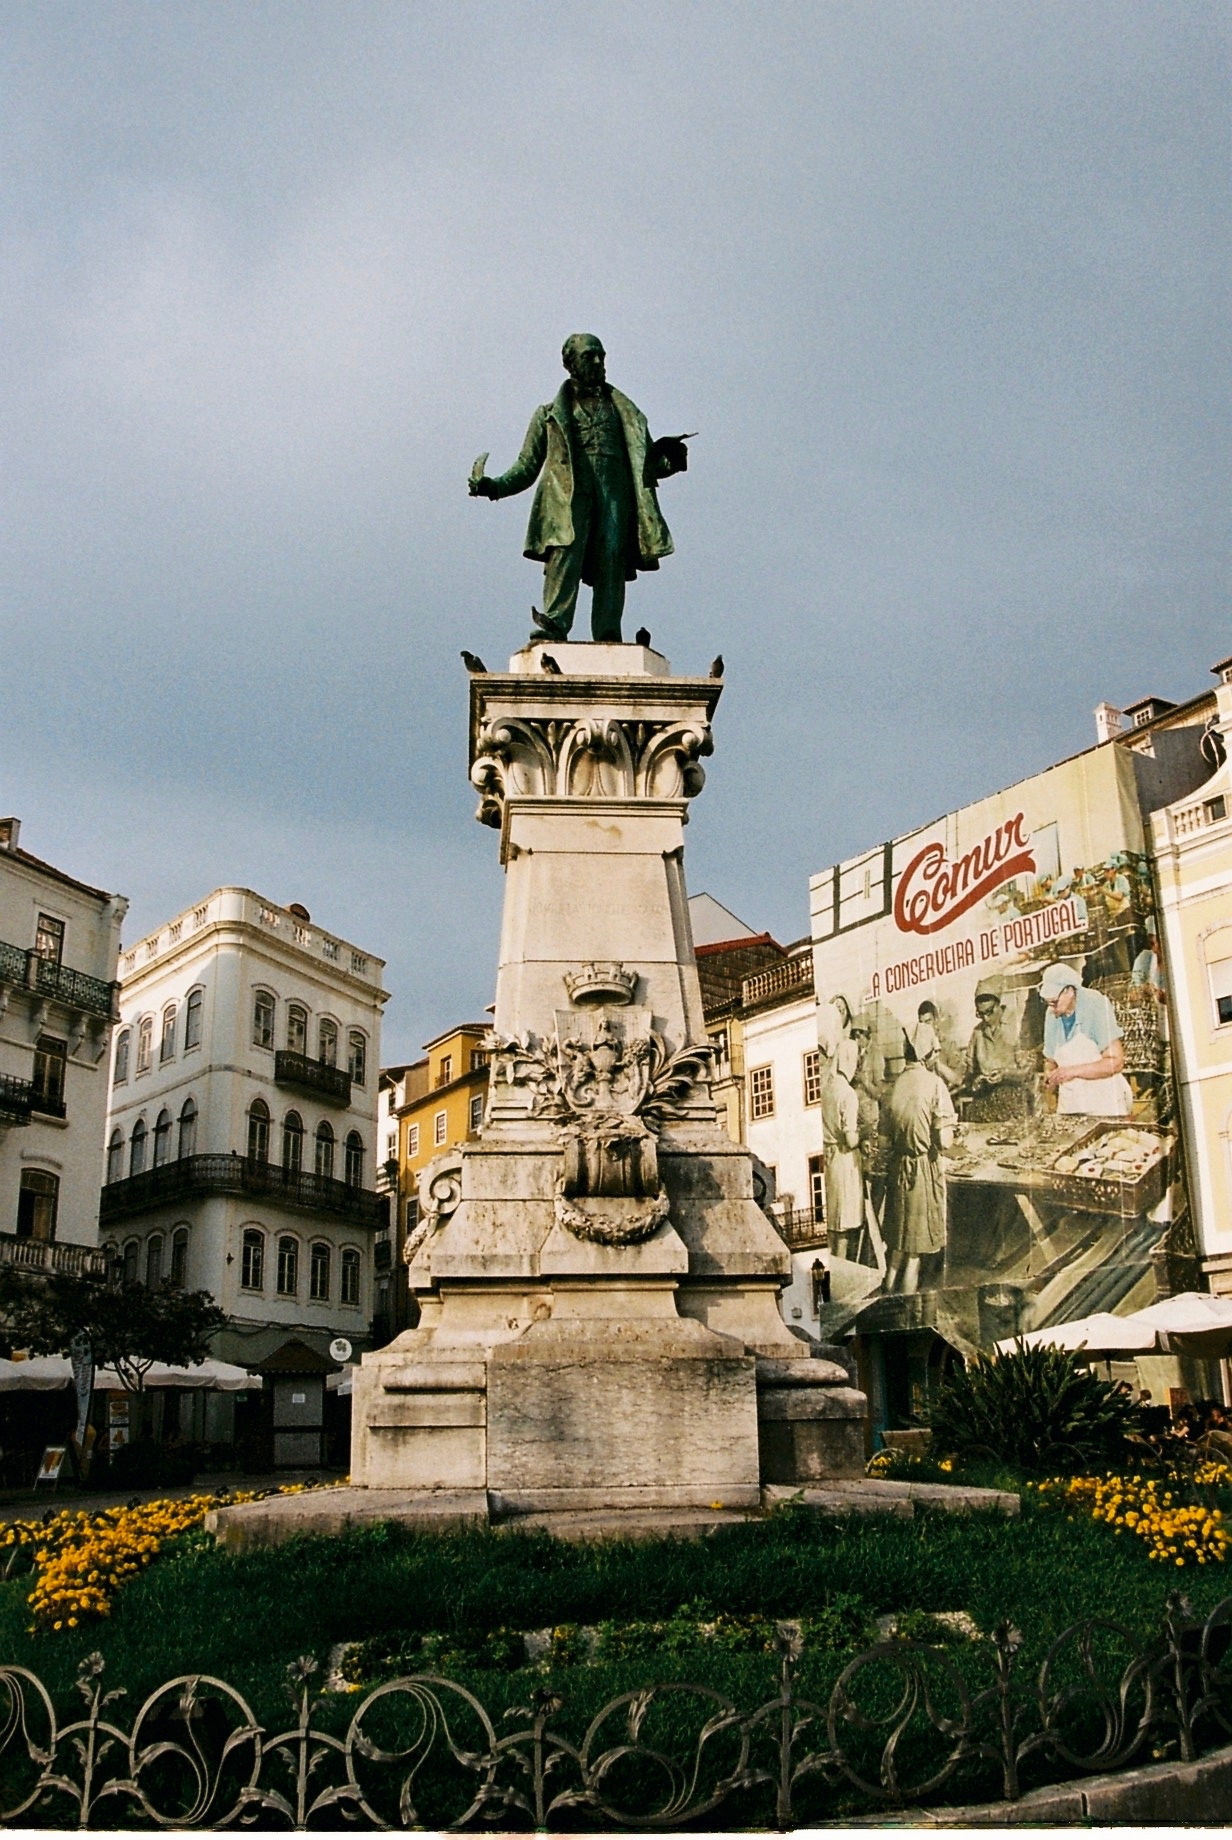 Coimbra 08-2019 - 25 of 62